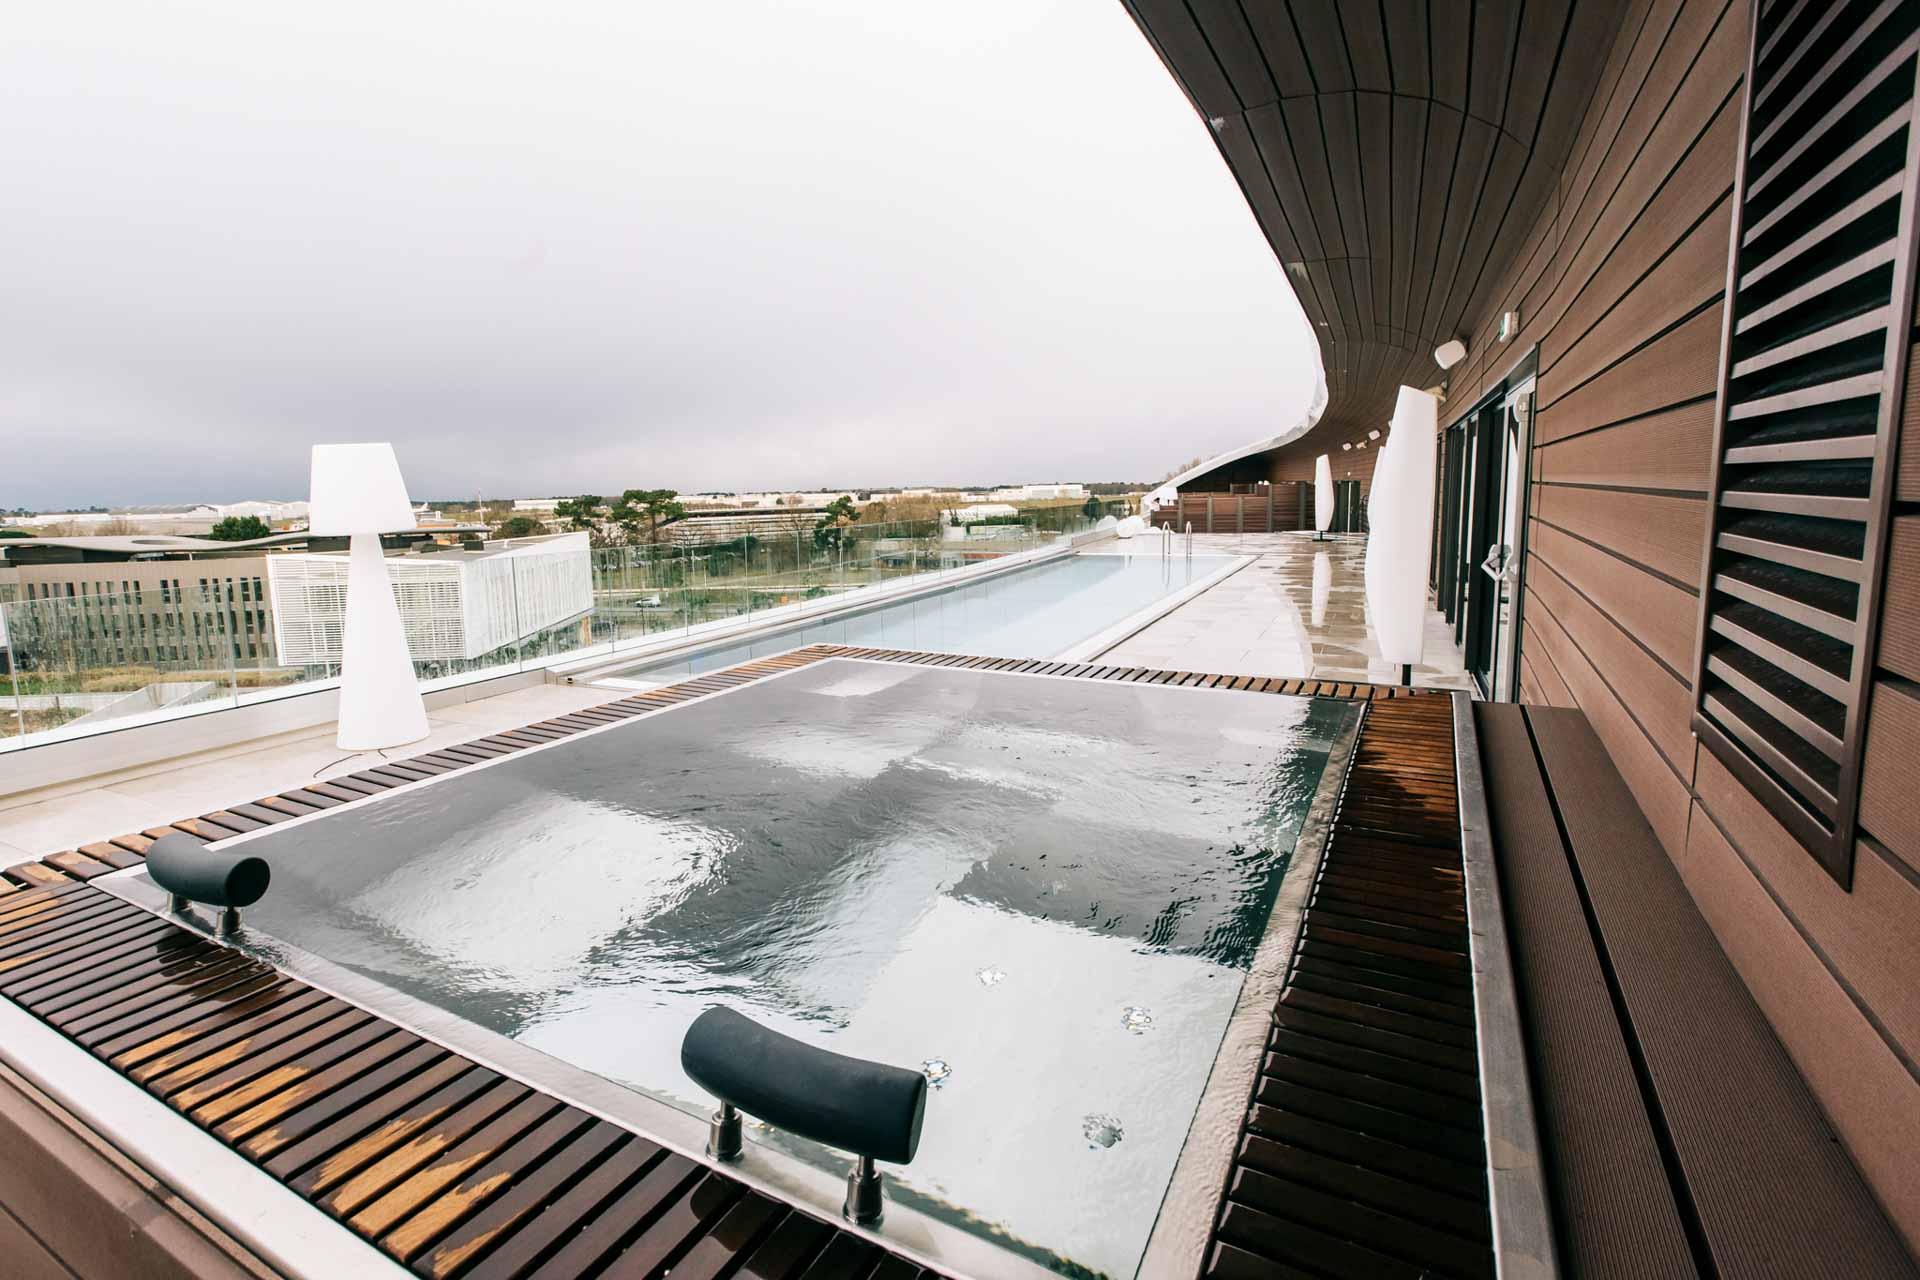 Un hôtel avec piscine à Bordeaux, perchée au dernier étage © Markerprod